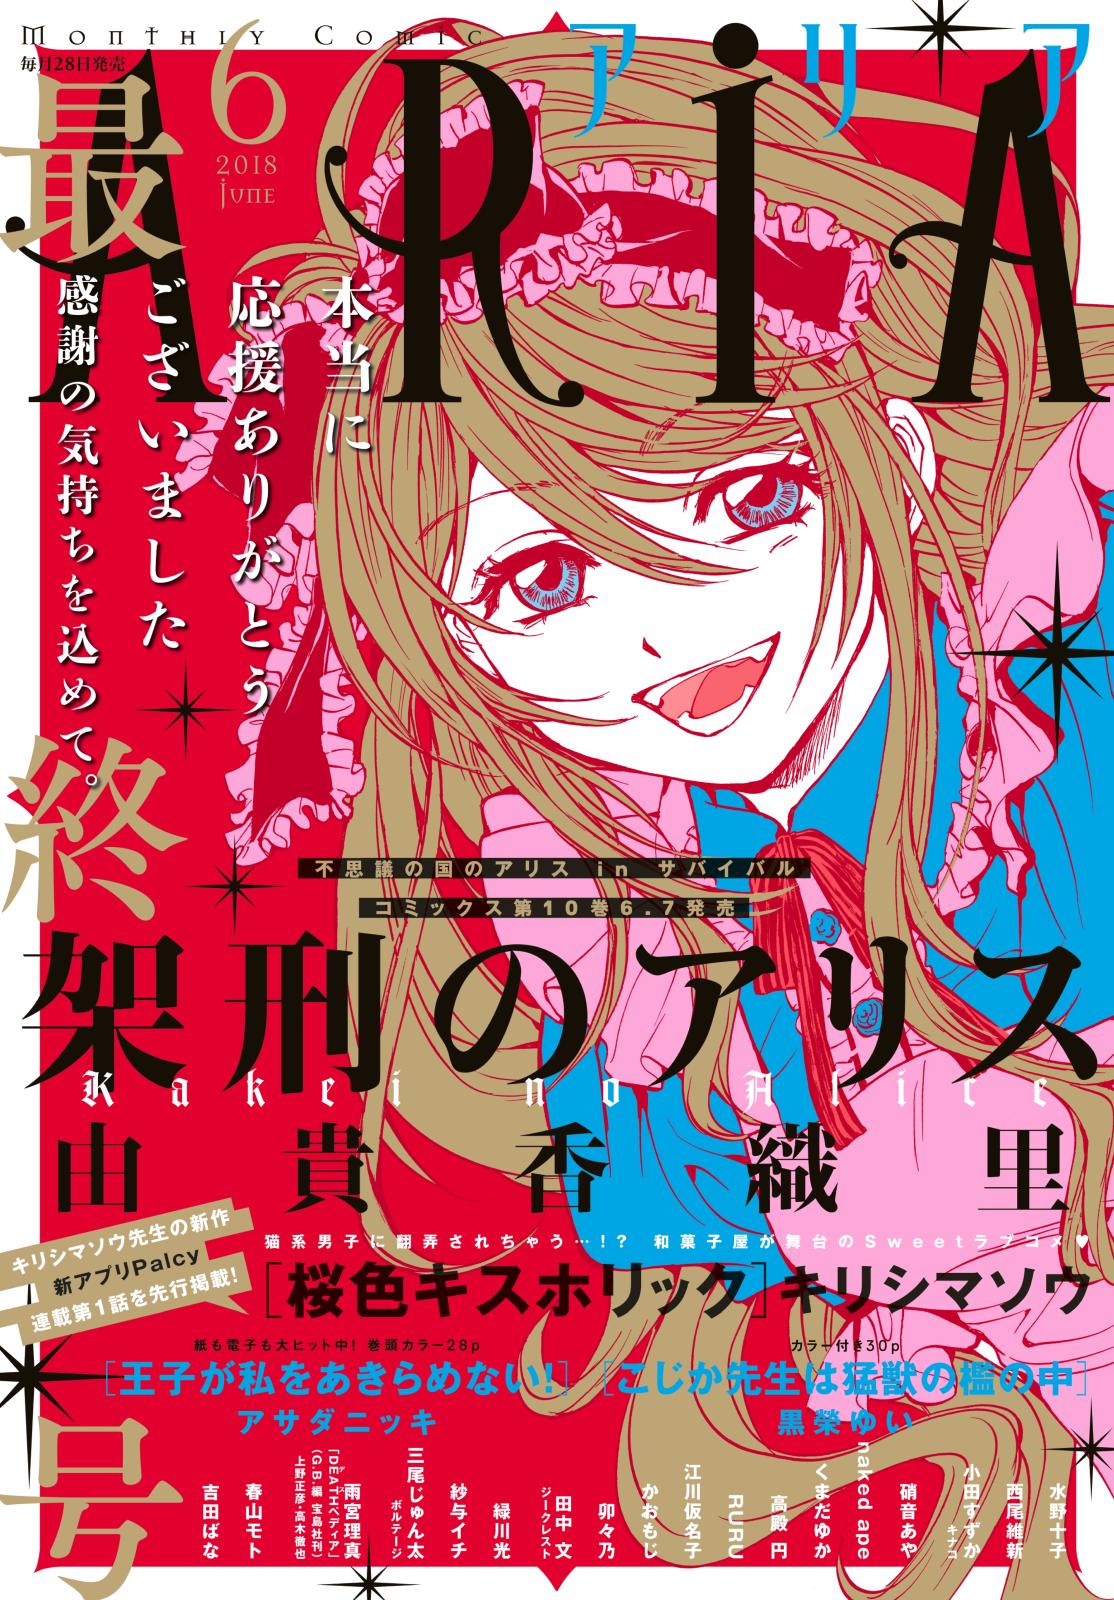 無料で読める 女性向け電子コミック雑誌5選 Music Jpニュース